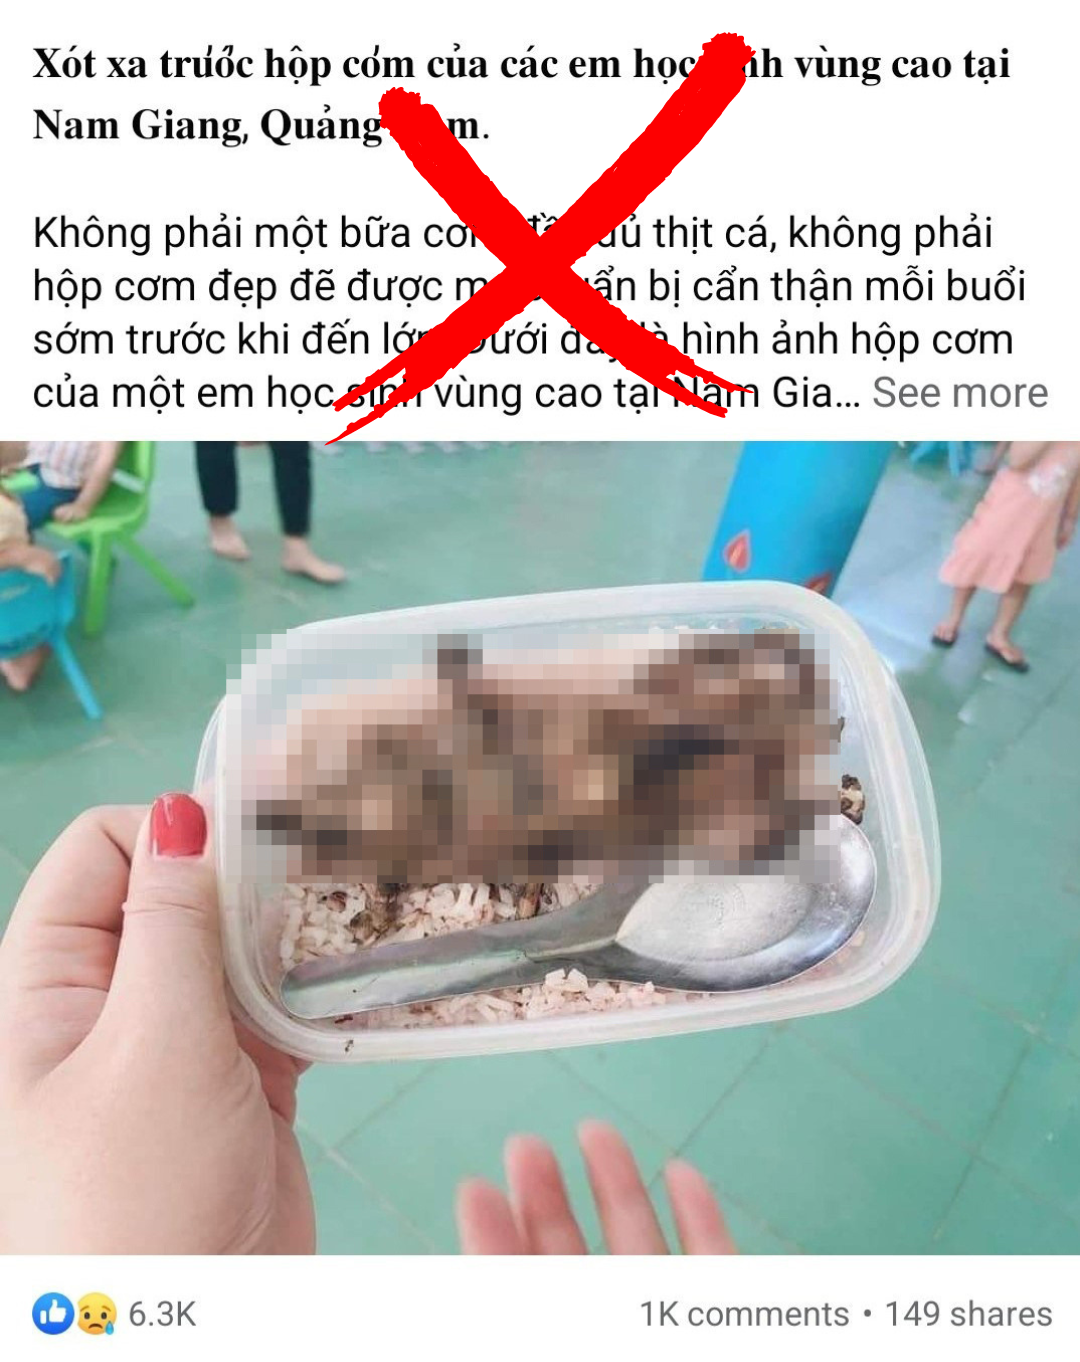 Bức ảnh kèm nội dung về hộp cơm có thịt chuột được lan truyền trên mạng xã hội. Ảnh: A.N chụp lại